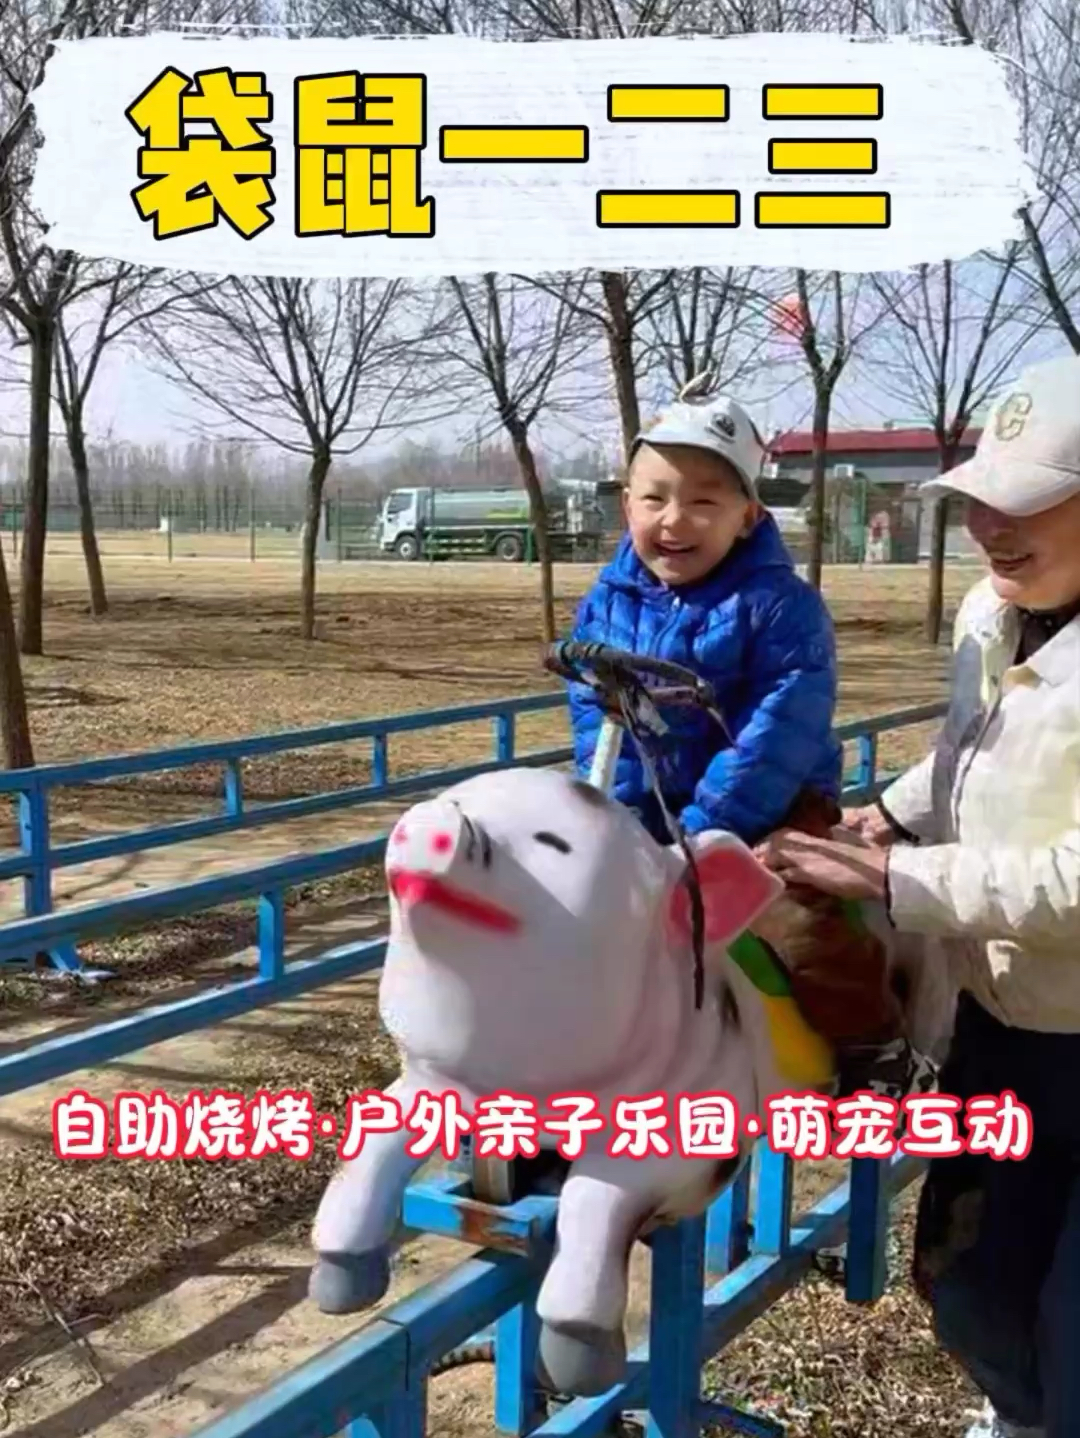 北京的宝爸宝妈注意了， 一个集合了大型户外亲子乐园、自助烧烤的户外庄园袋鼠一二三，终于对外开业了。 